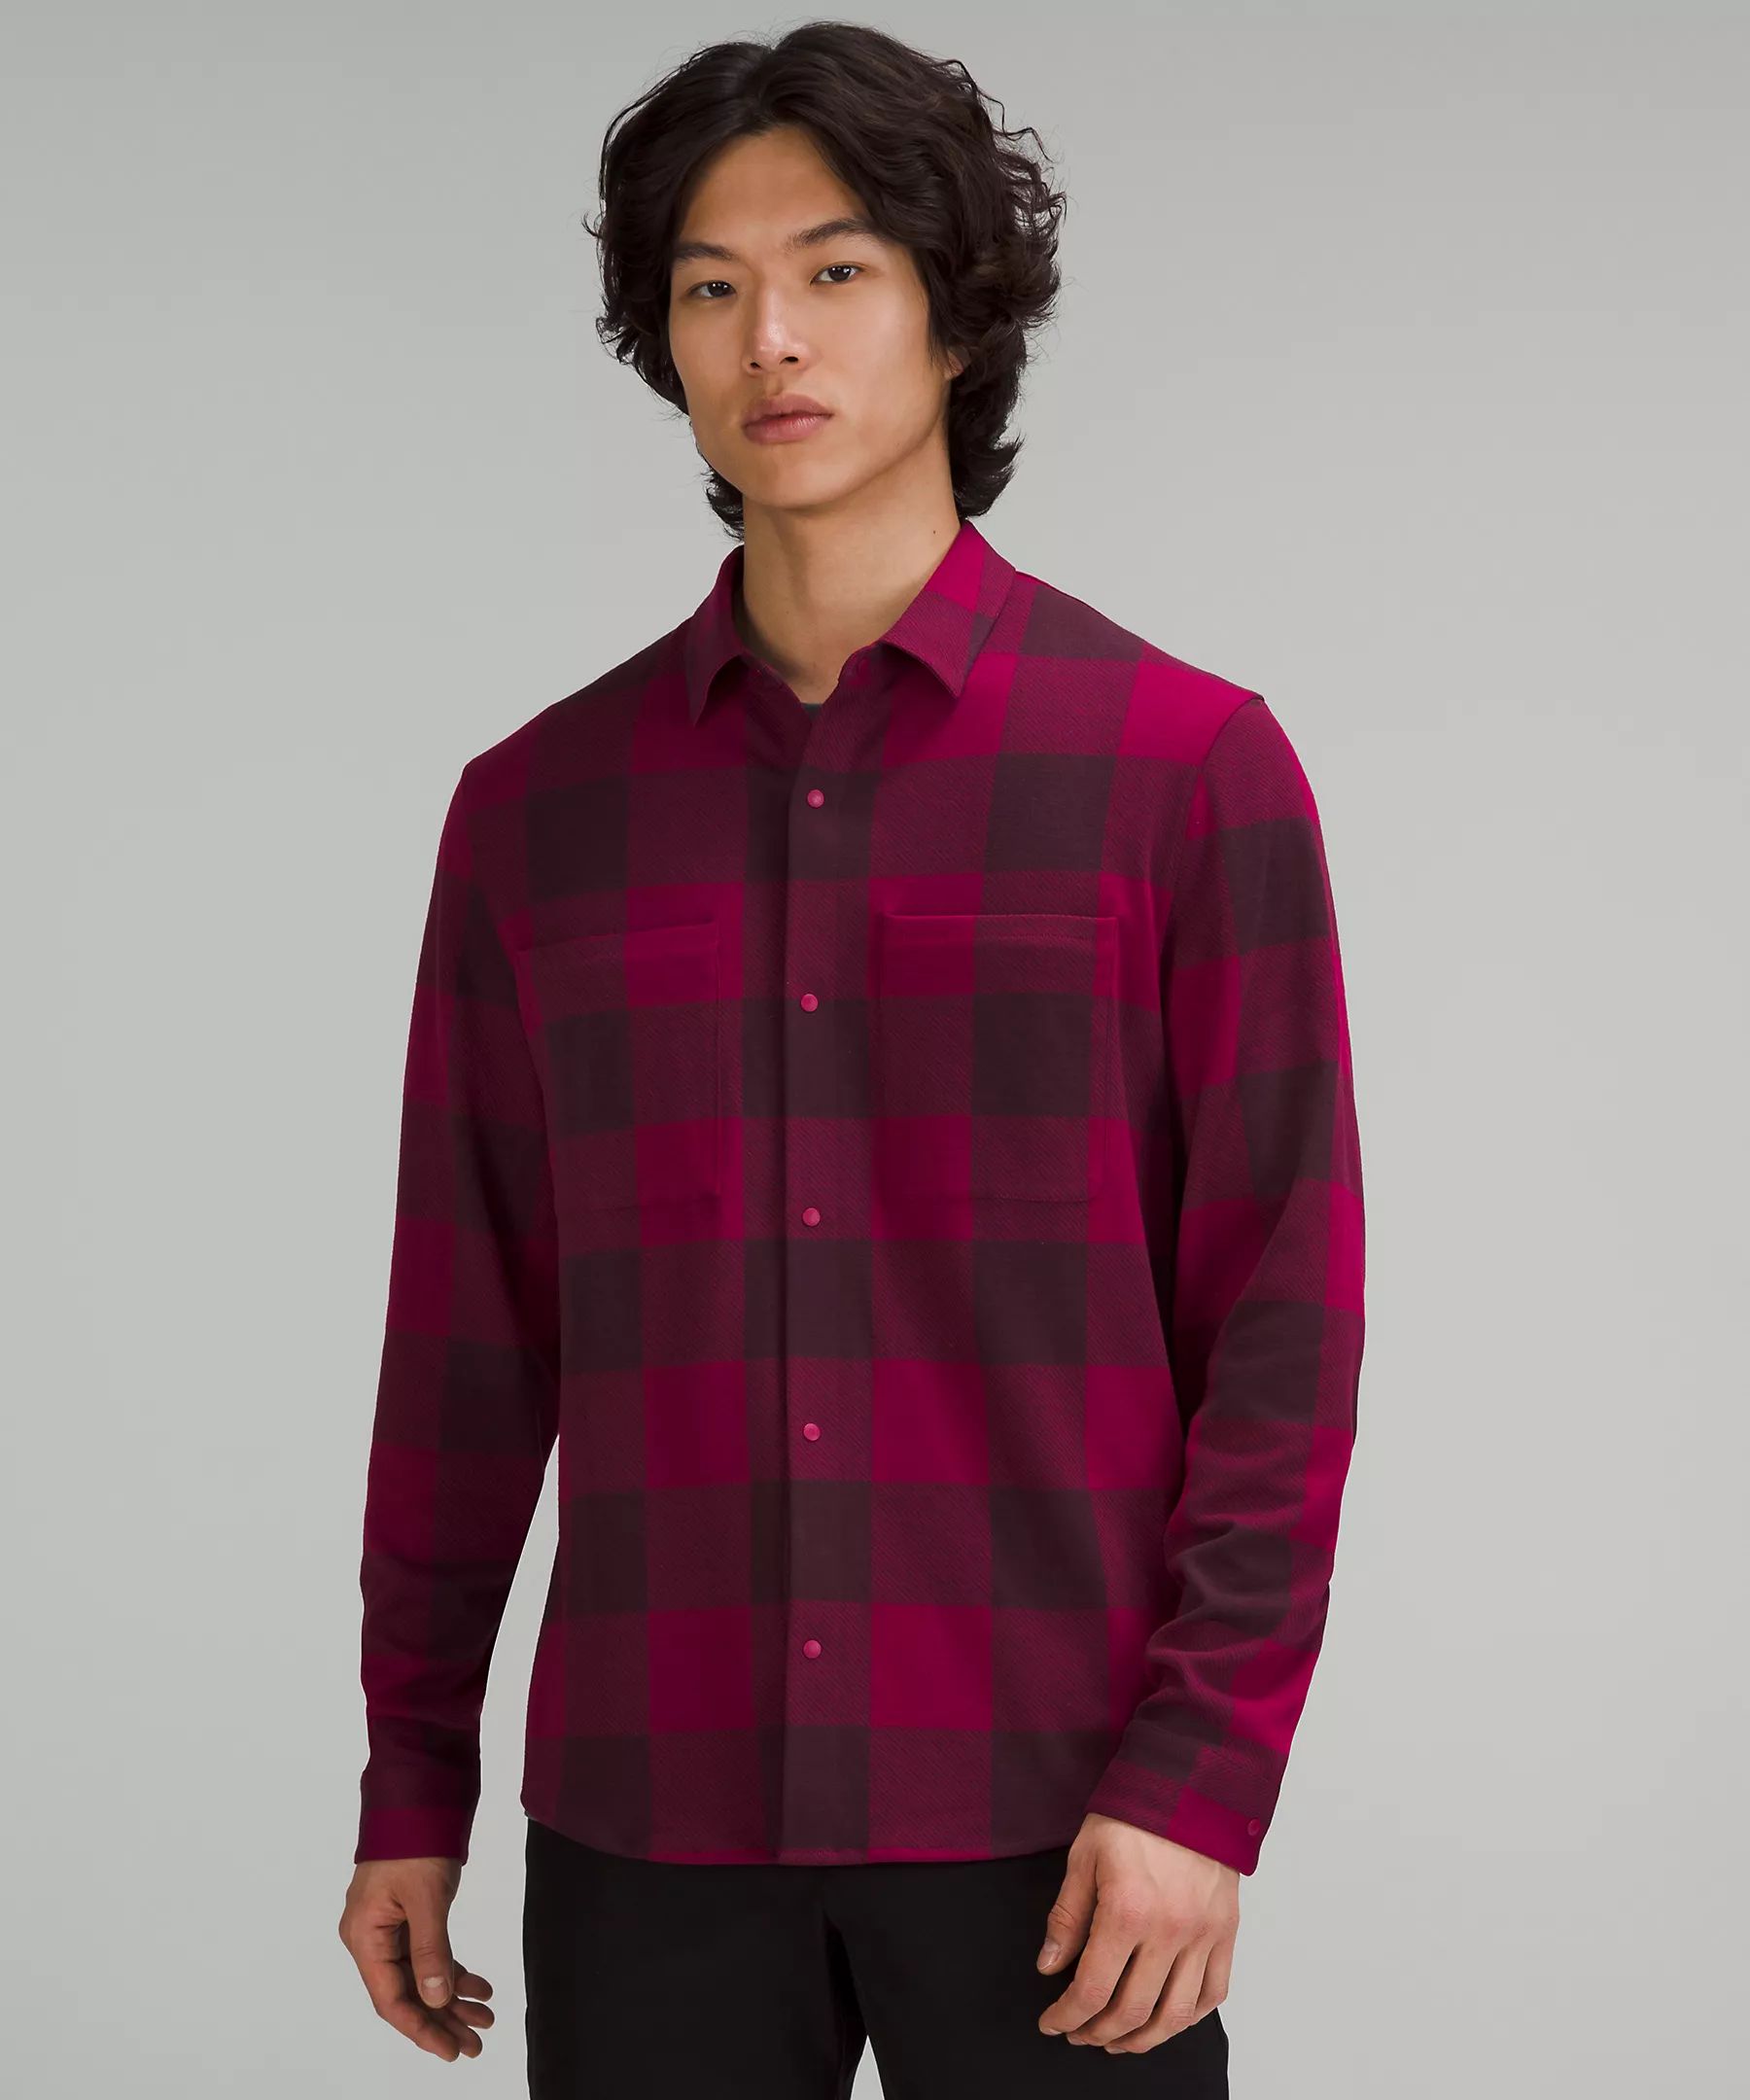 Soft Knit Overshirt | Men's Long Sleeve Shirts | lululemon | Lululemon (US)